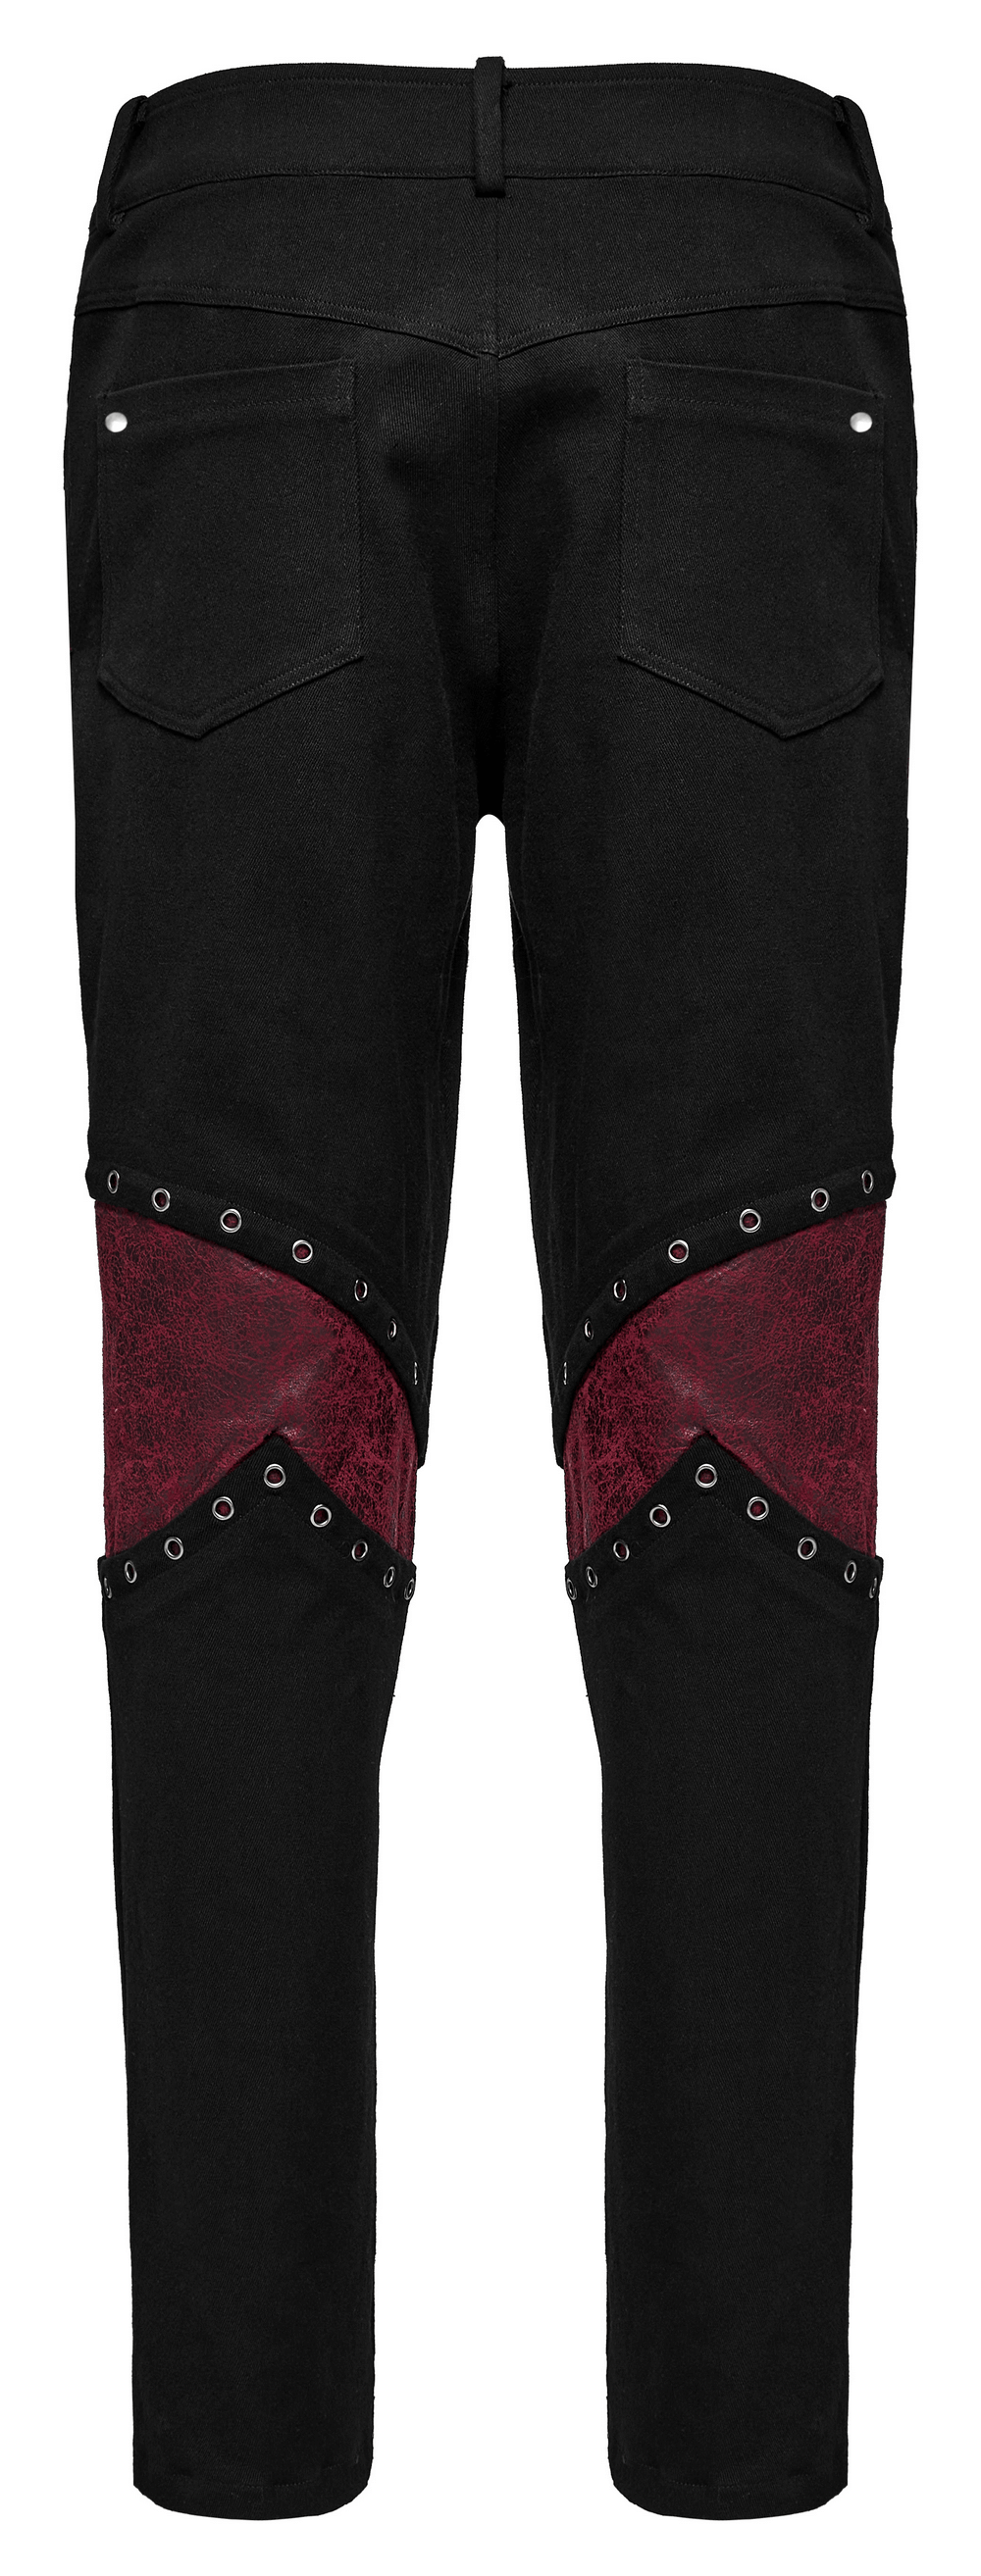 Pantalones desgastados góticos con cordones y ojales de metal